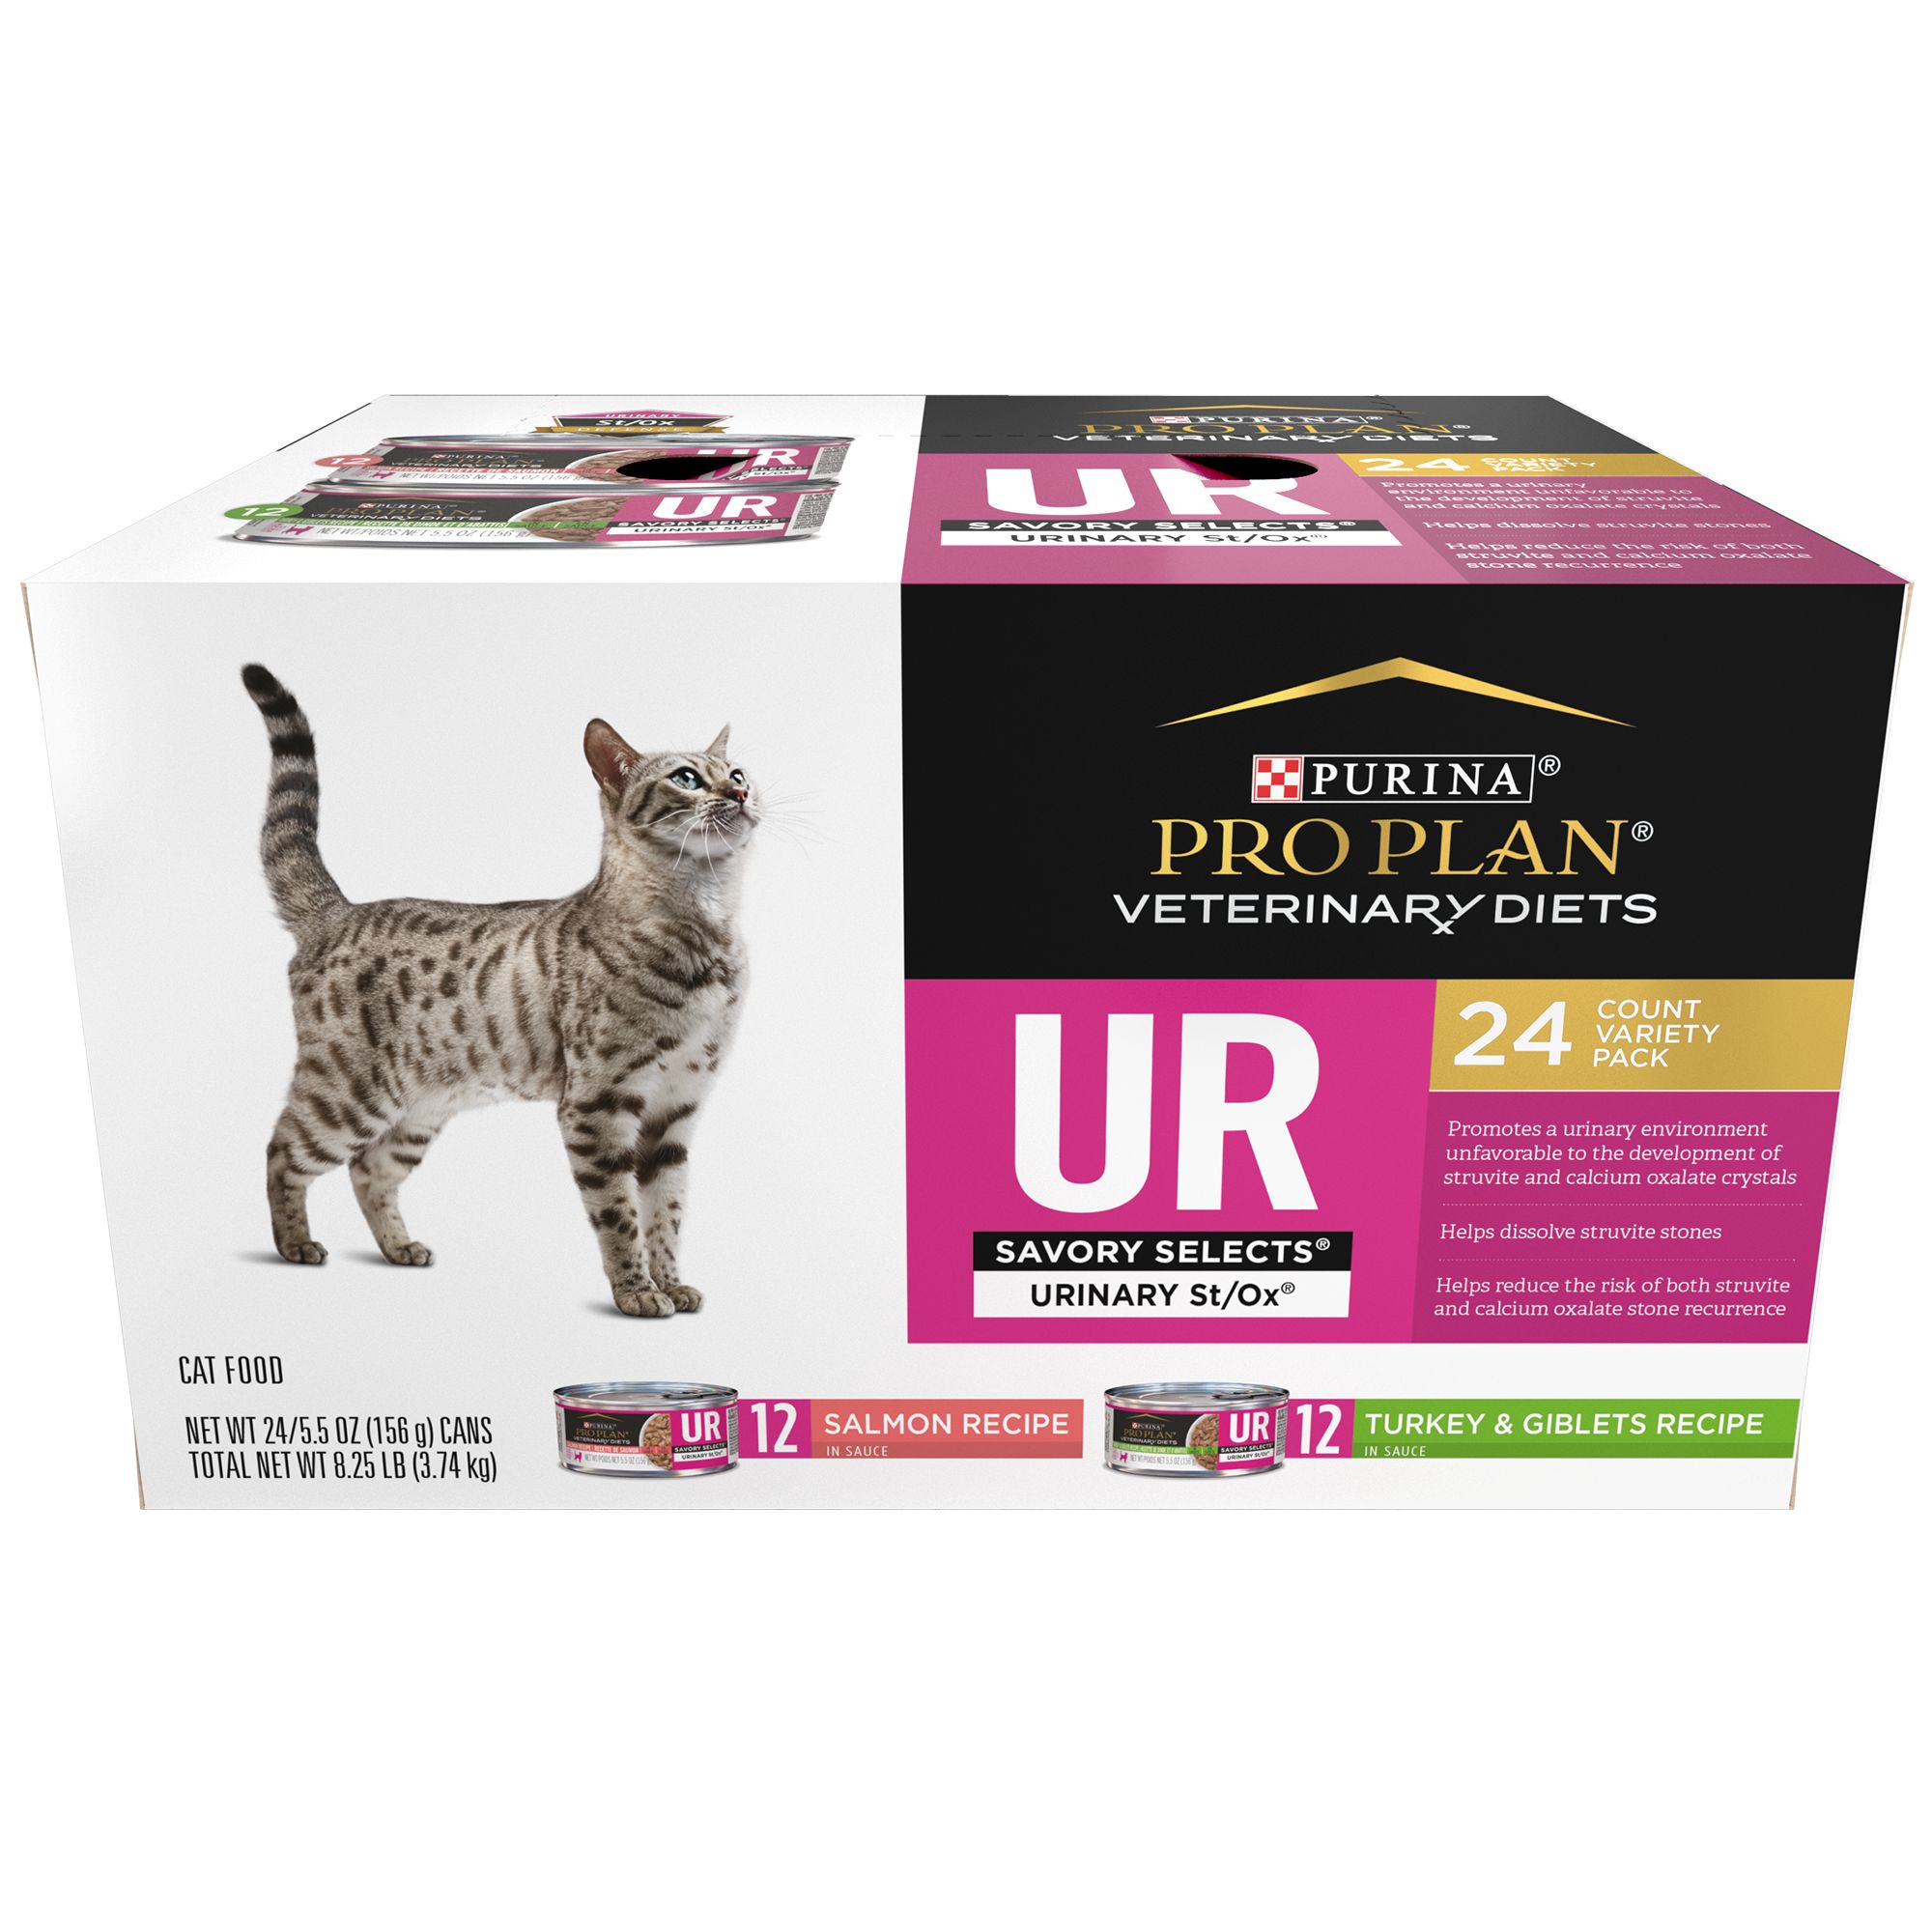 Pro plan veterinary urinary для кошек. Pro Plan renal для кошек. Пурина Уринари. Purina Уринари. Pro Plan Urinary для кошек.